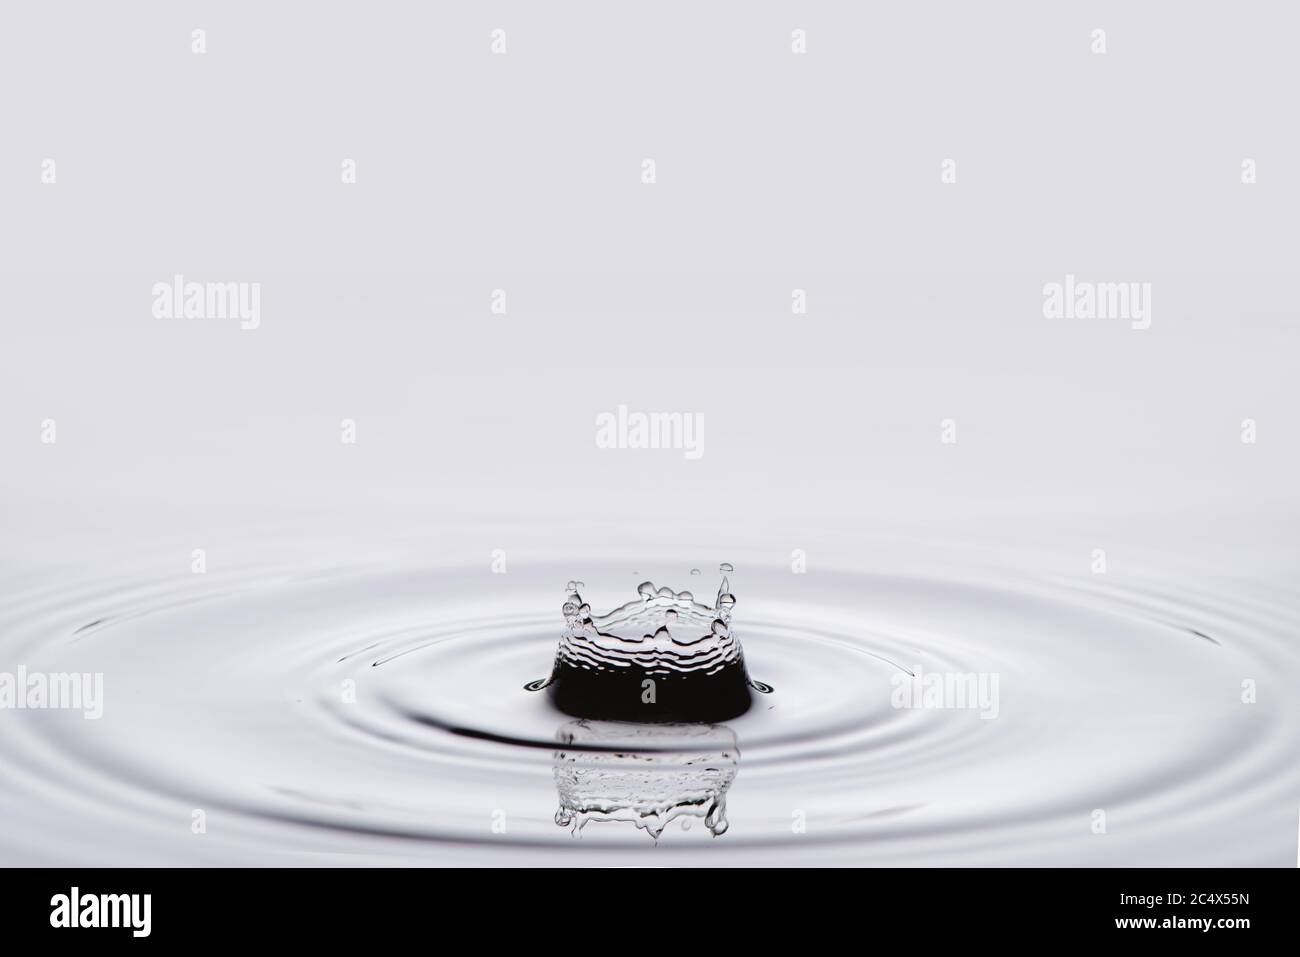 Water splash isolated on white background. Stock Photo